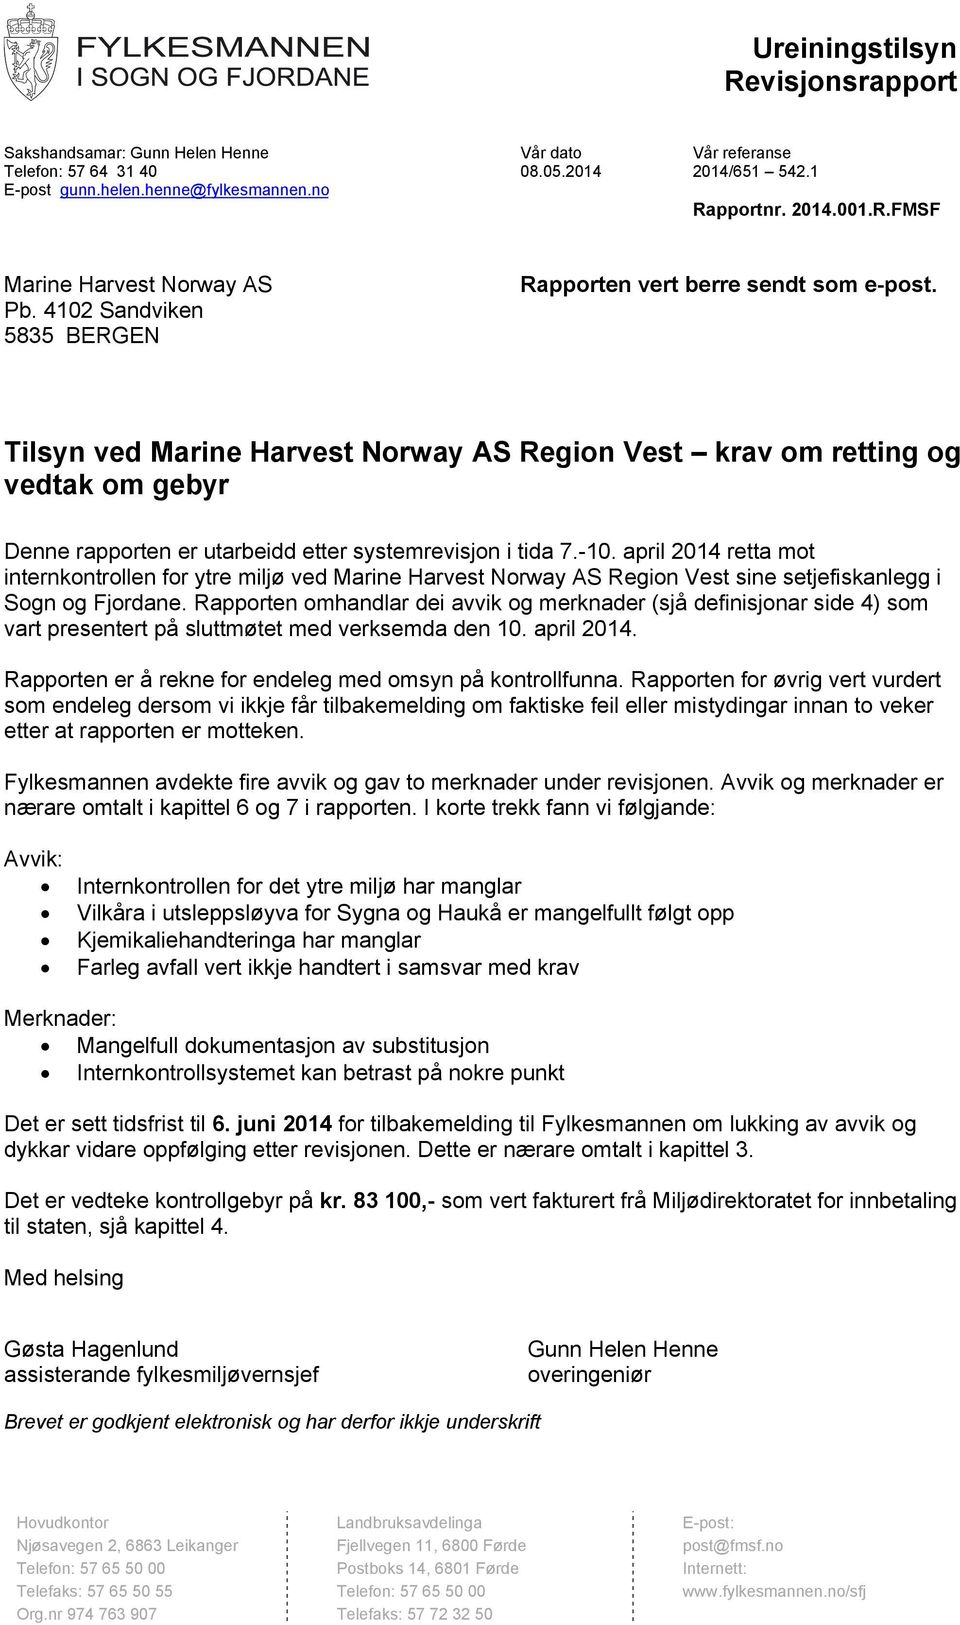 Tilsyn ved Marine Harvest Norway AS Region Vest krav om retting og vedtak  om gebyr - PDF Gratis nedlasting